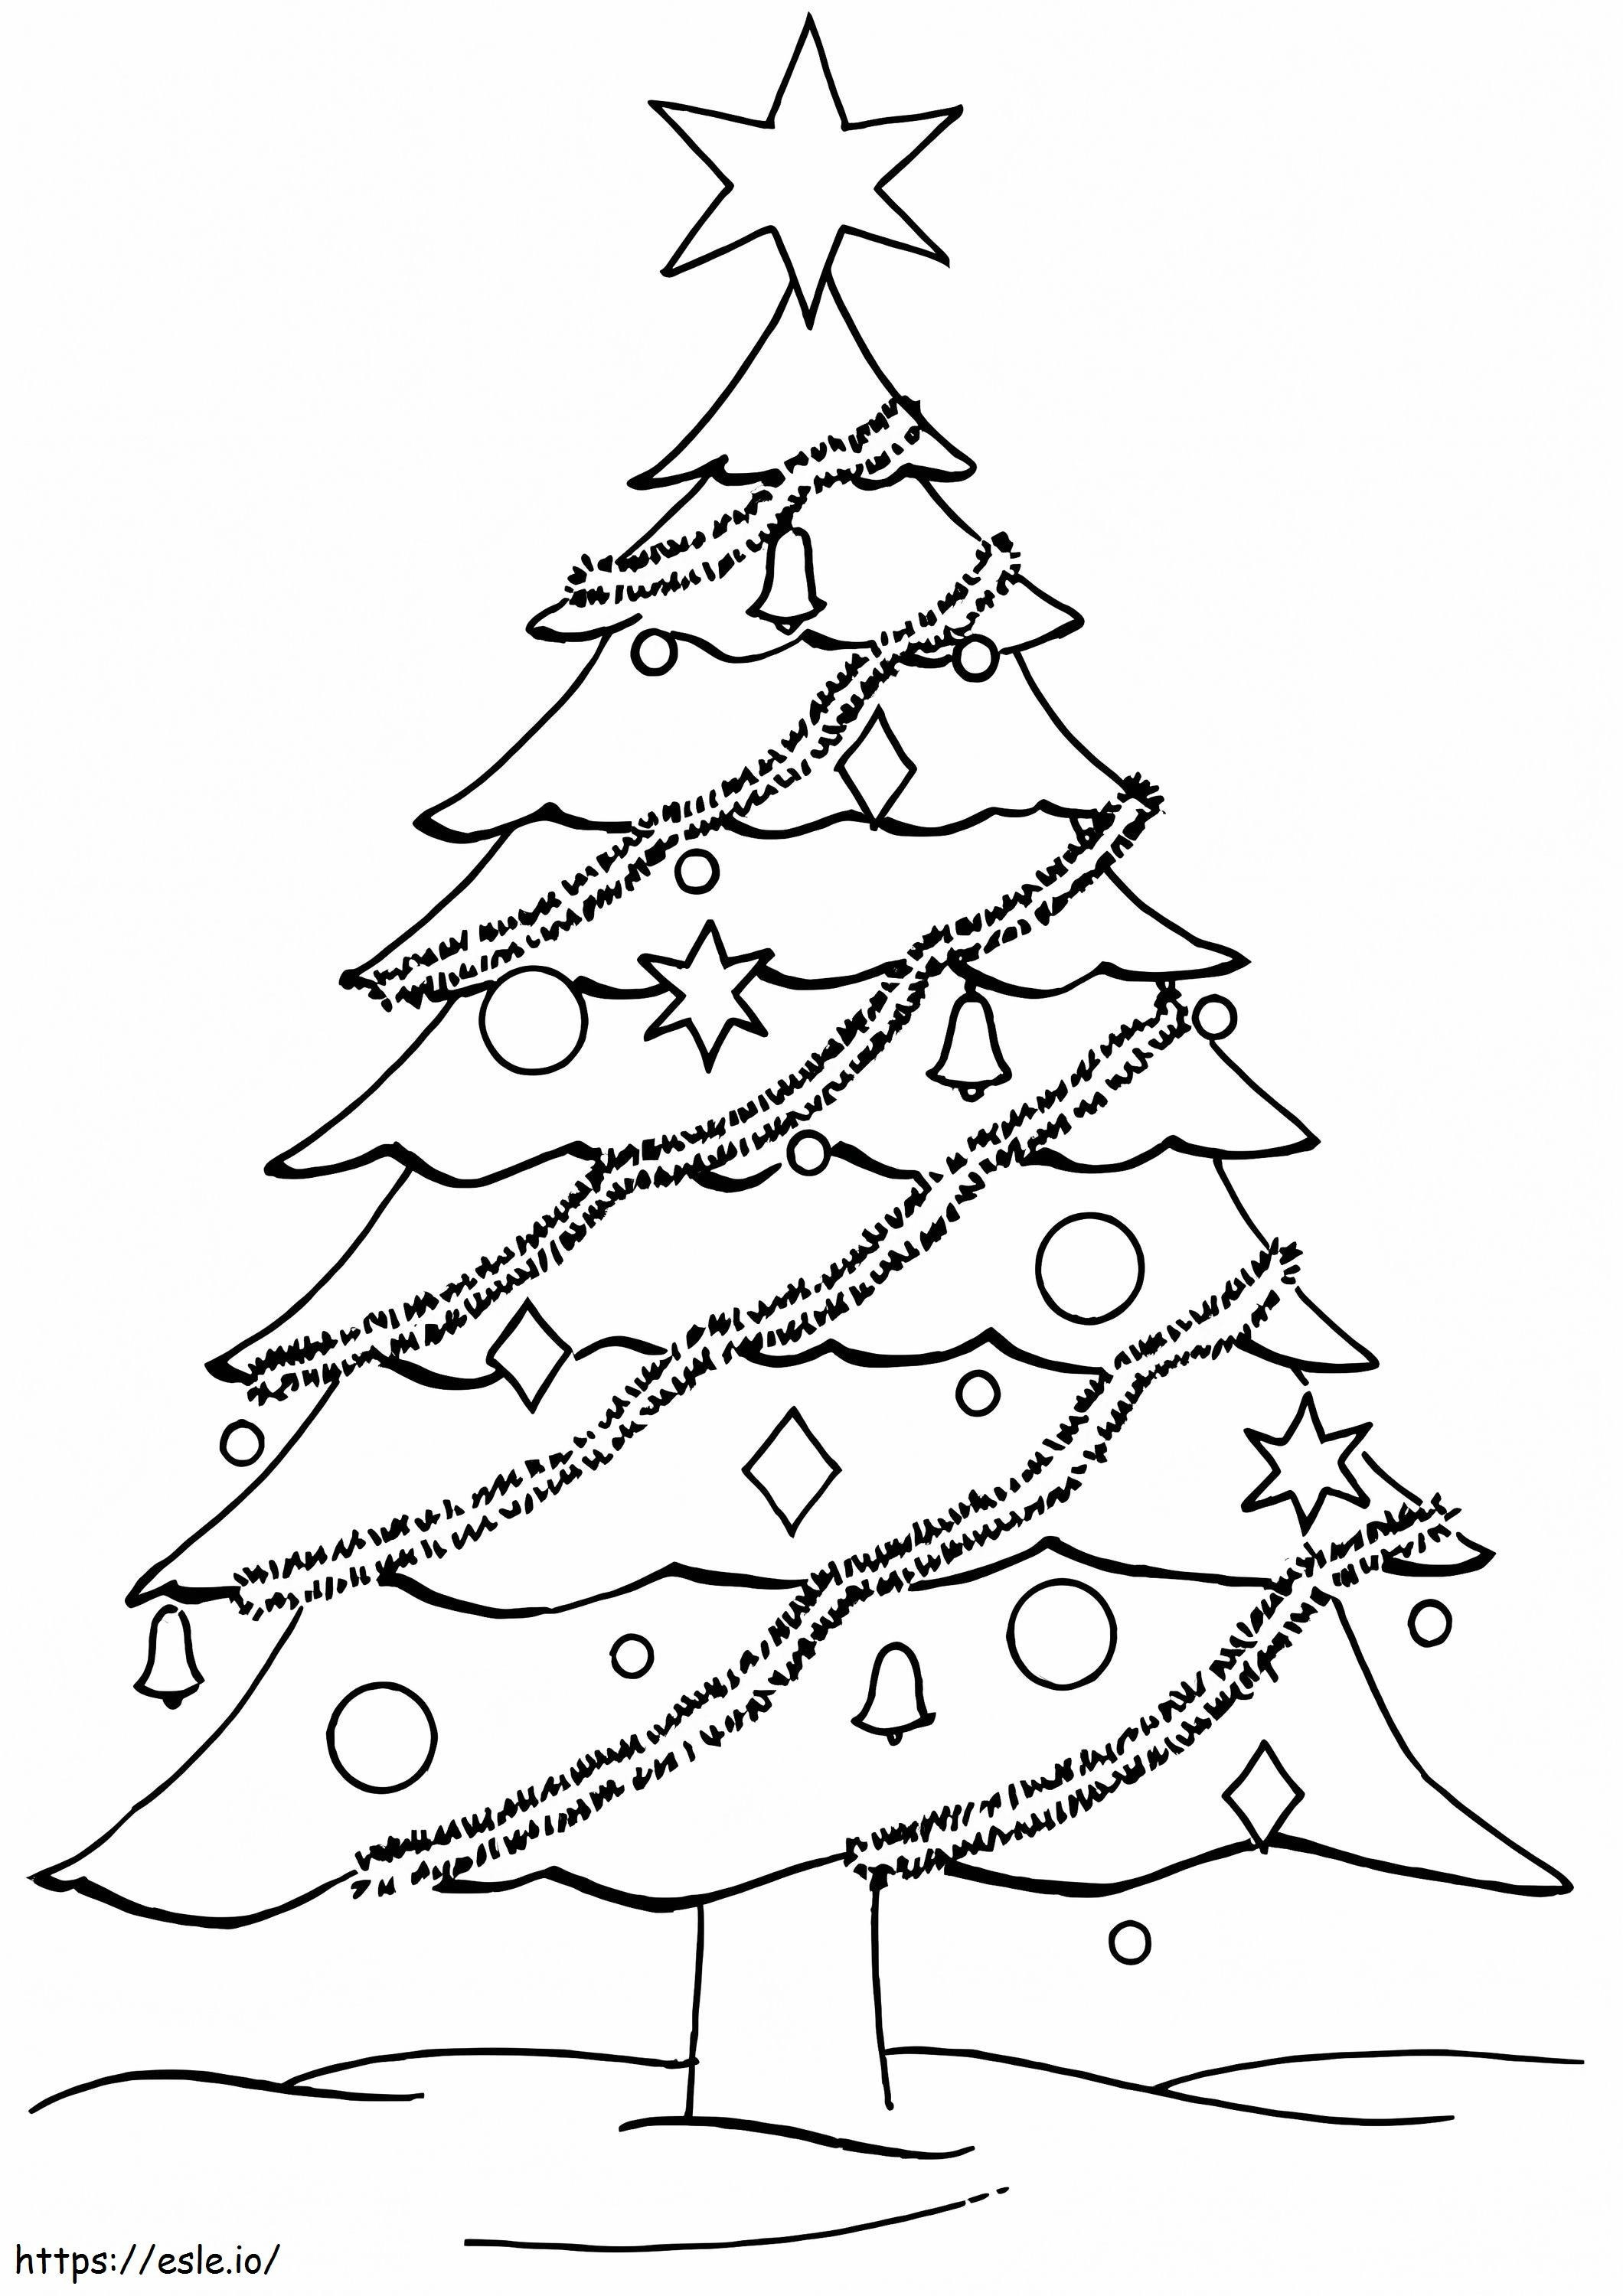 Stella di base sull'albero di Natale da colorare